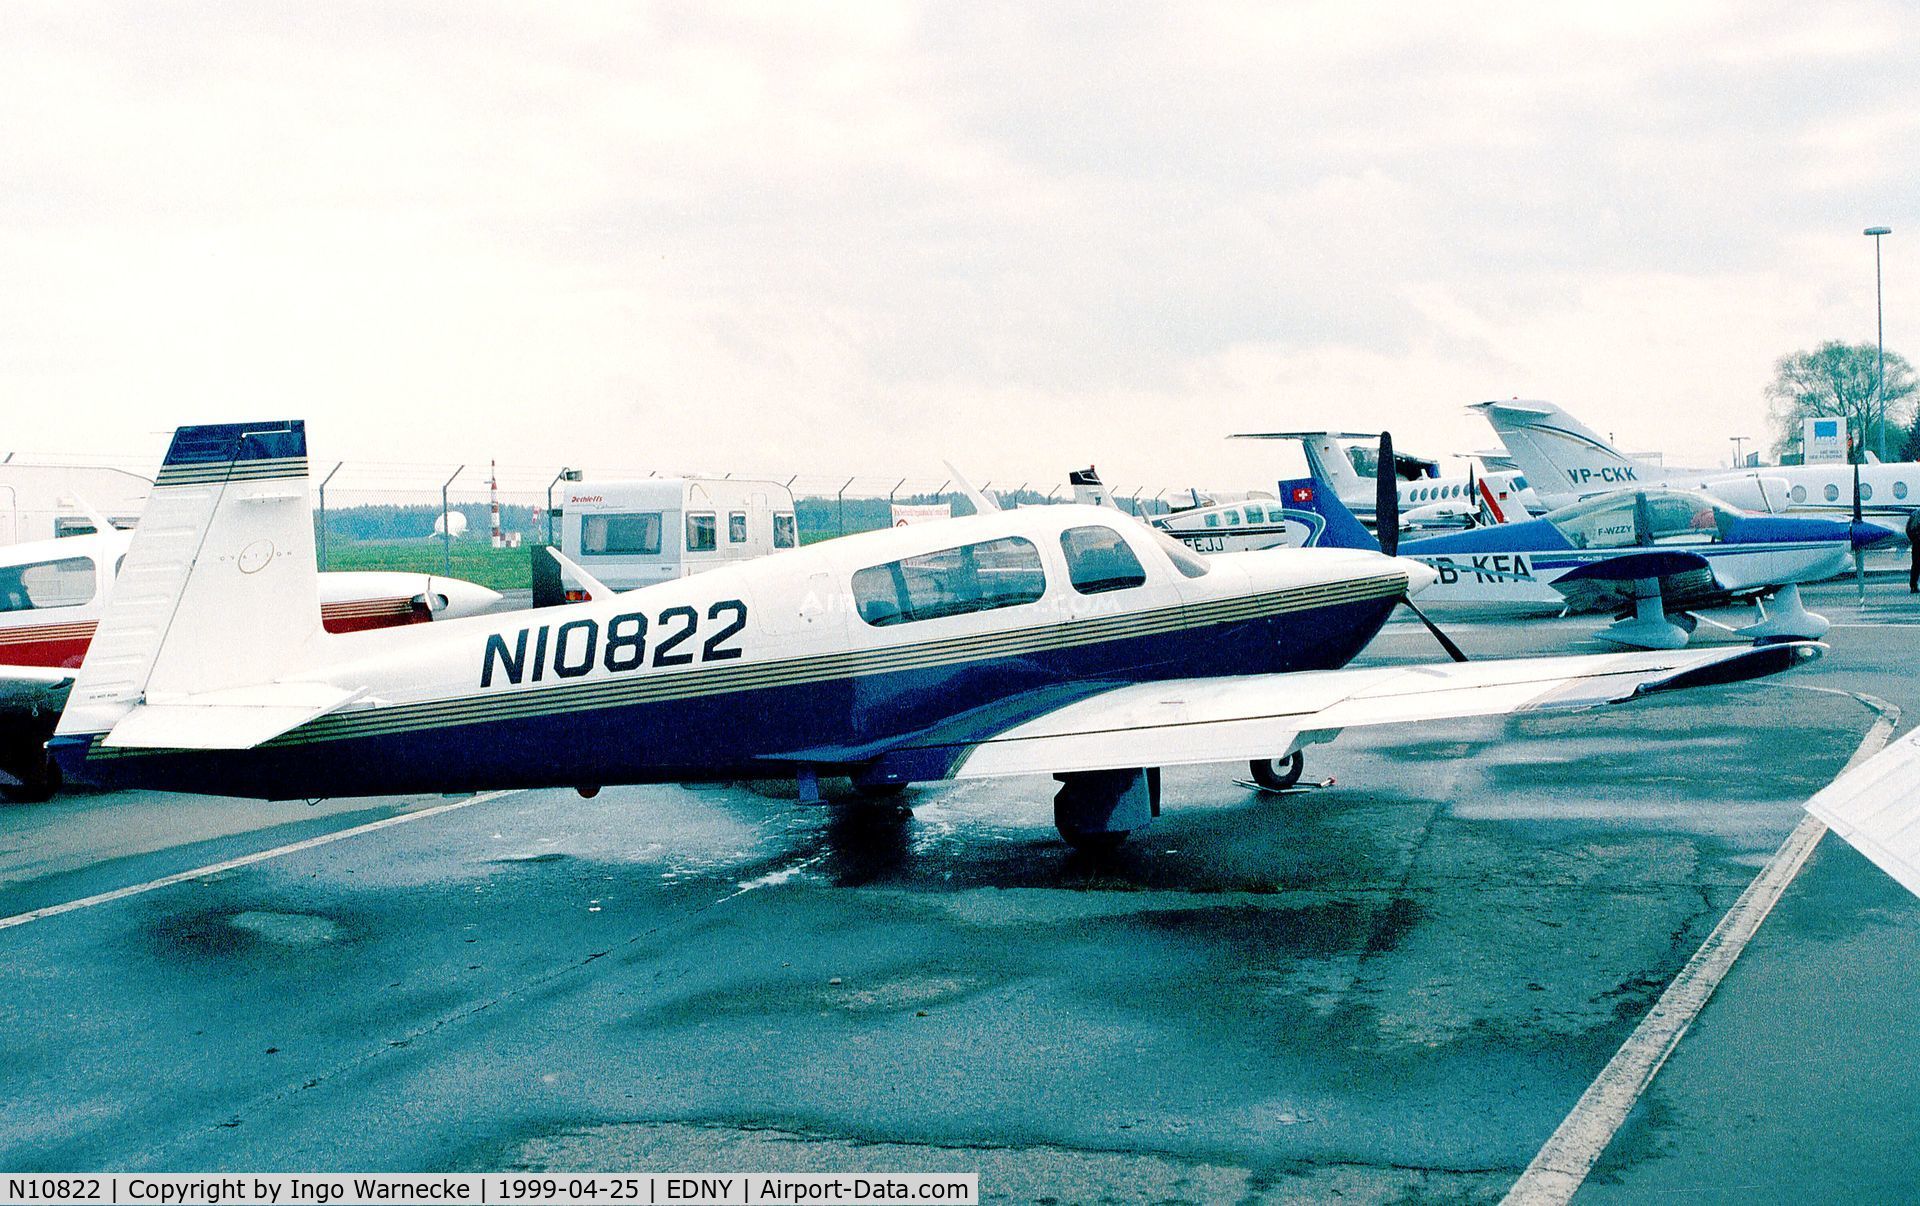 N10822, 1997 Mooney M20R Ovation C/N 29-0118, Mooney M20R Ovation at the Aero 1999, Friedrichshafen